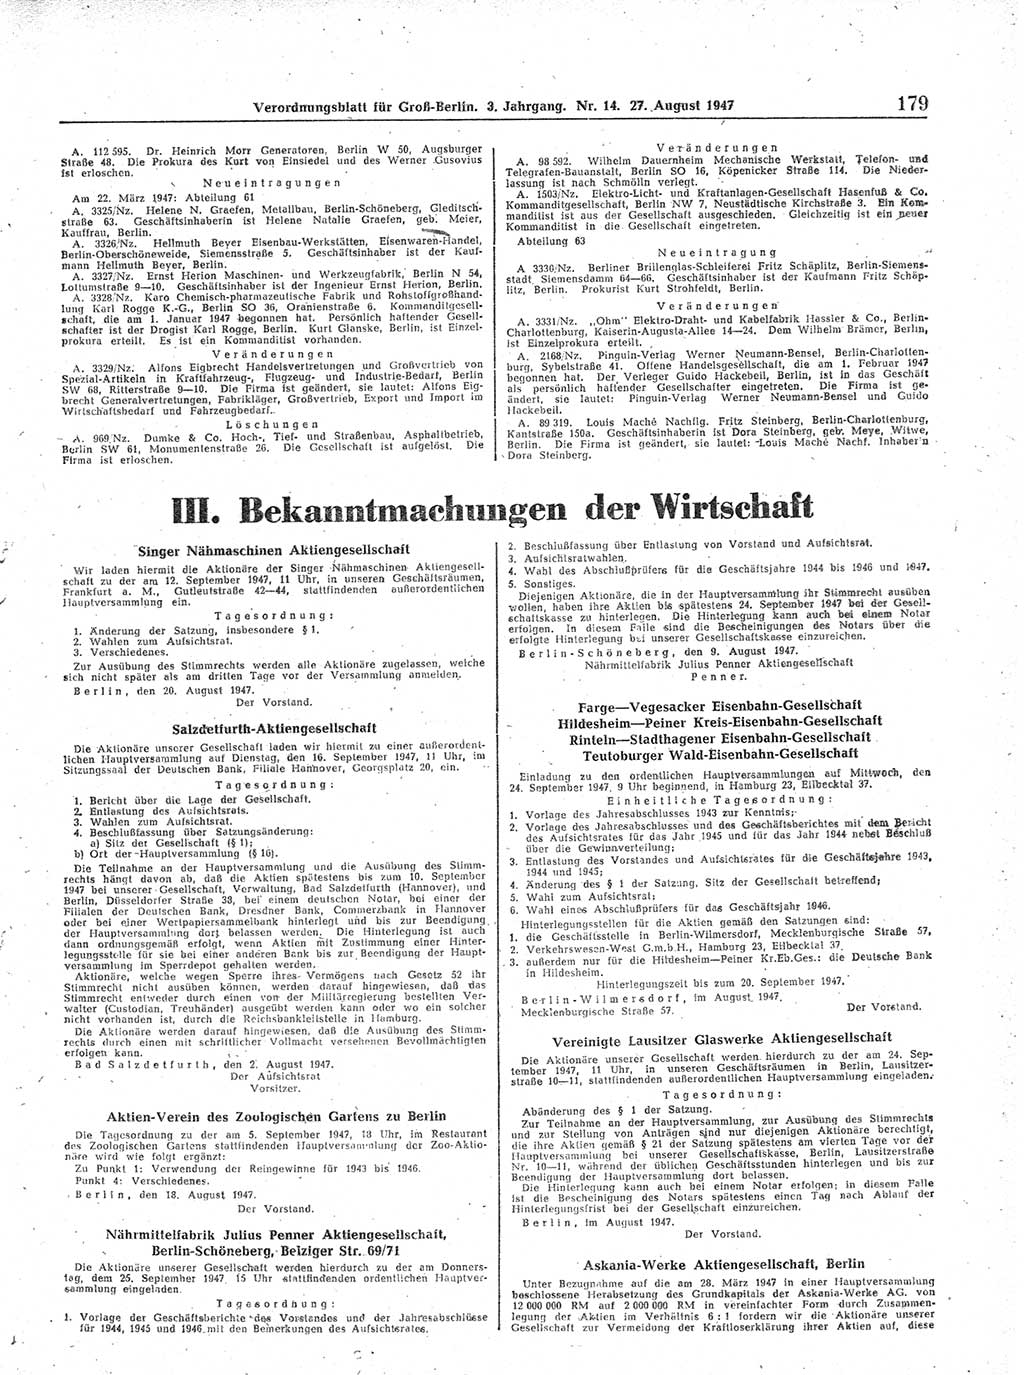 Verordnungsblatt (VOBl.) für Groß-Berlin 1947, Seite 179 (VOBl. Bln. 1947, S. 179)